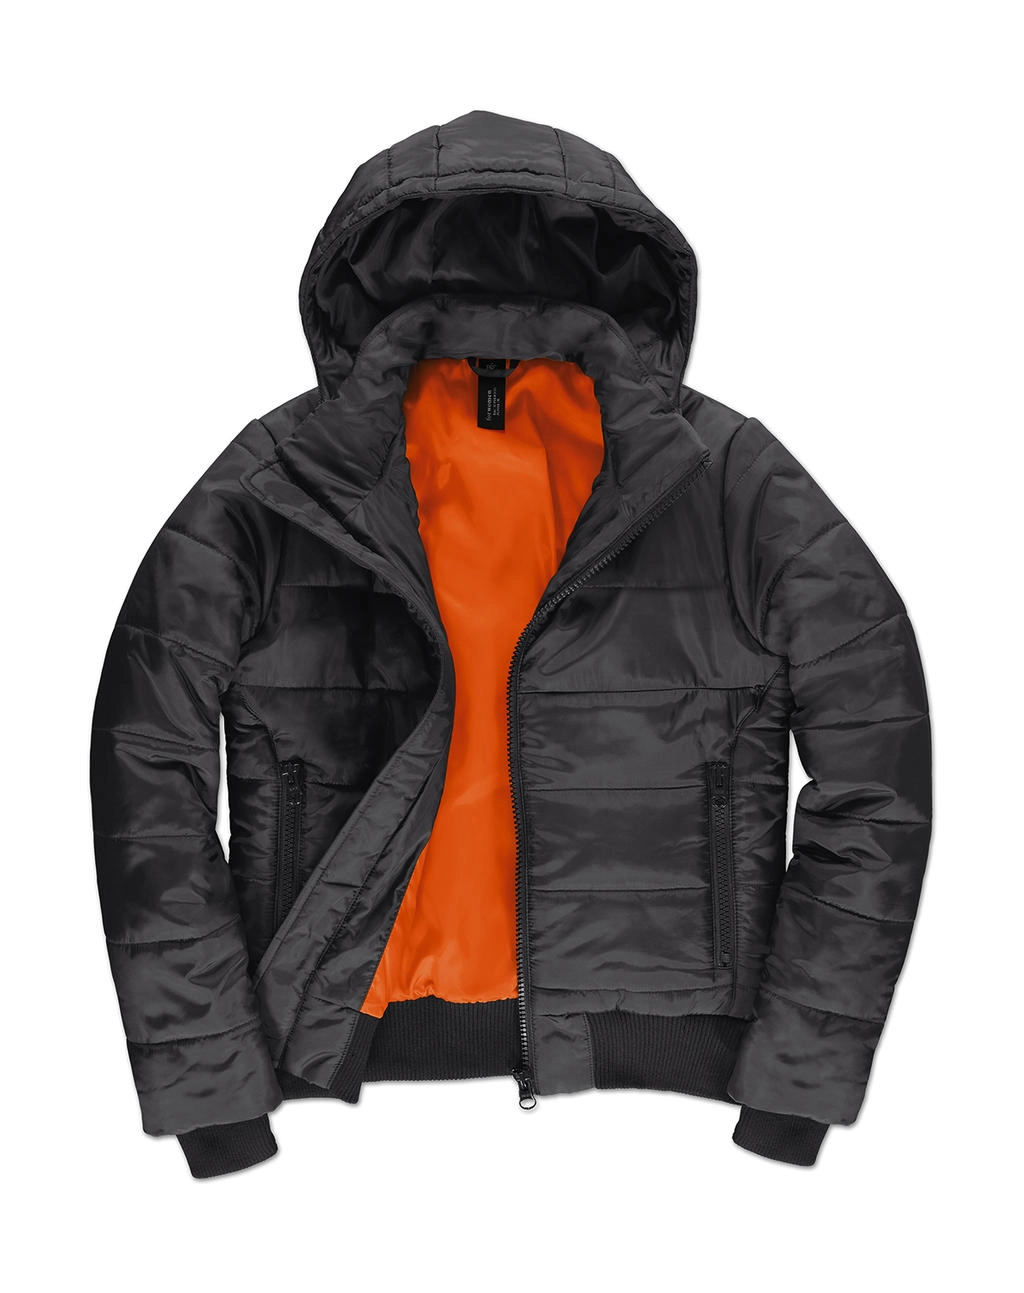 Superhood/women Jacket zum Besticken und Bedrucken in der Farbe Dark Grey/Neon Orange mit Ihren Logo, Schriftzug oder Motiv.